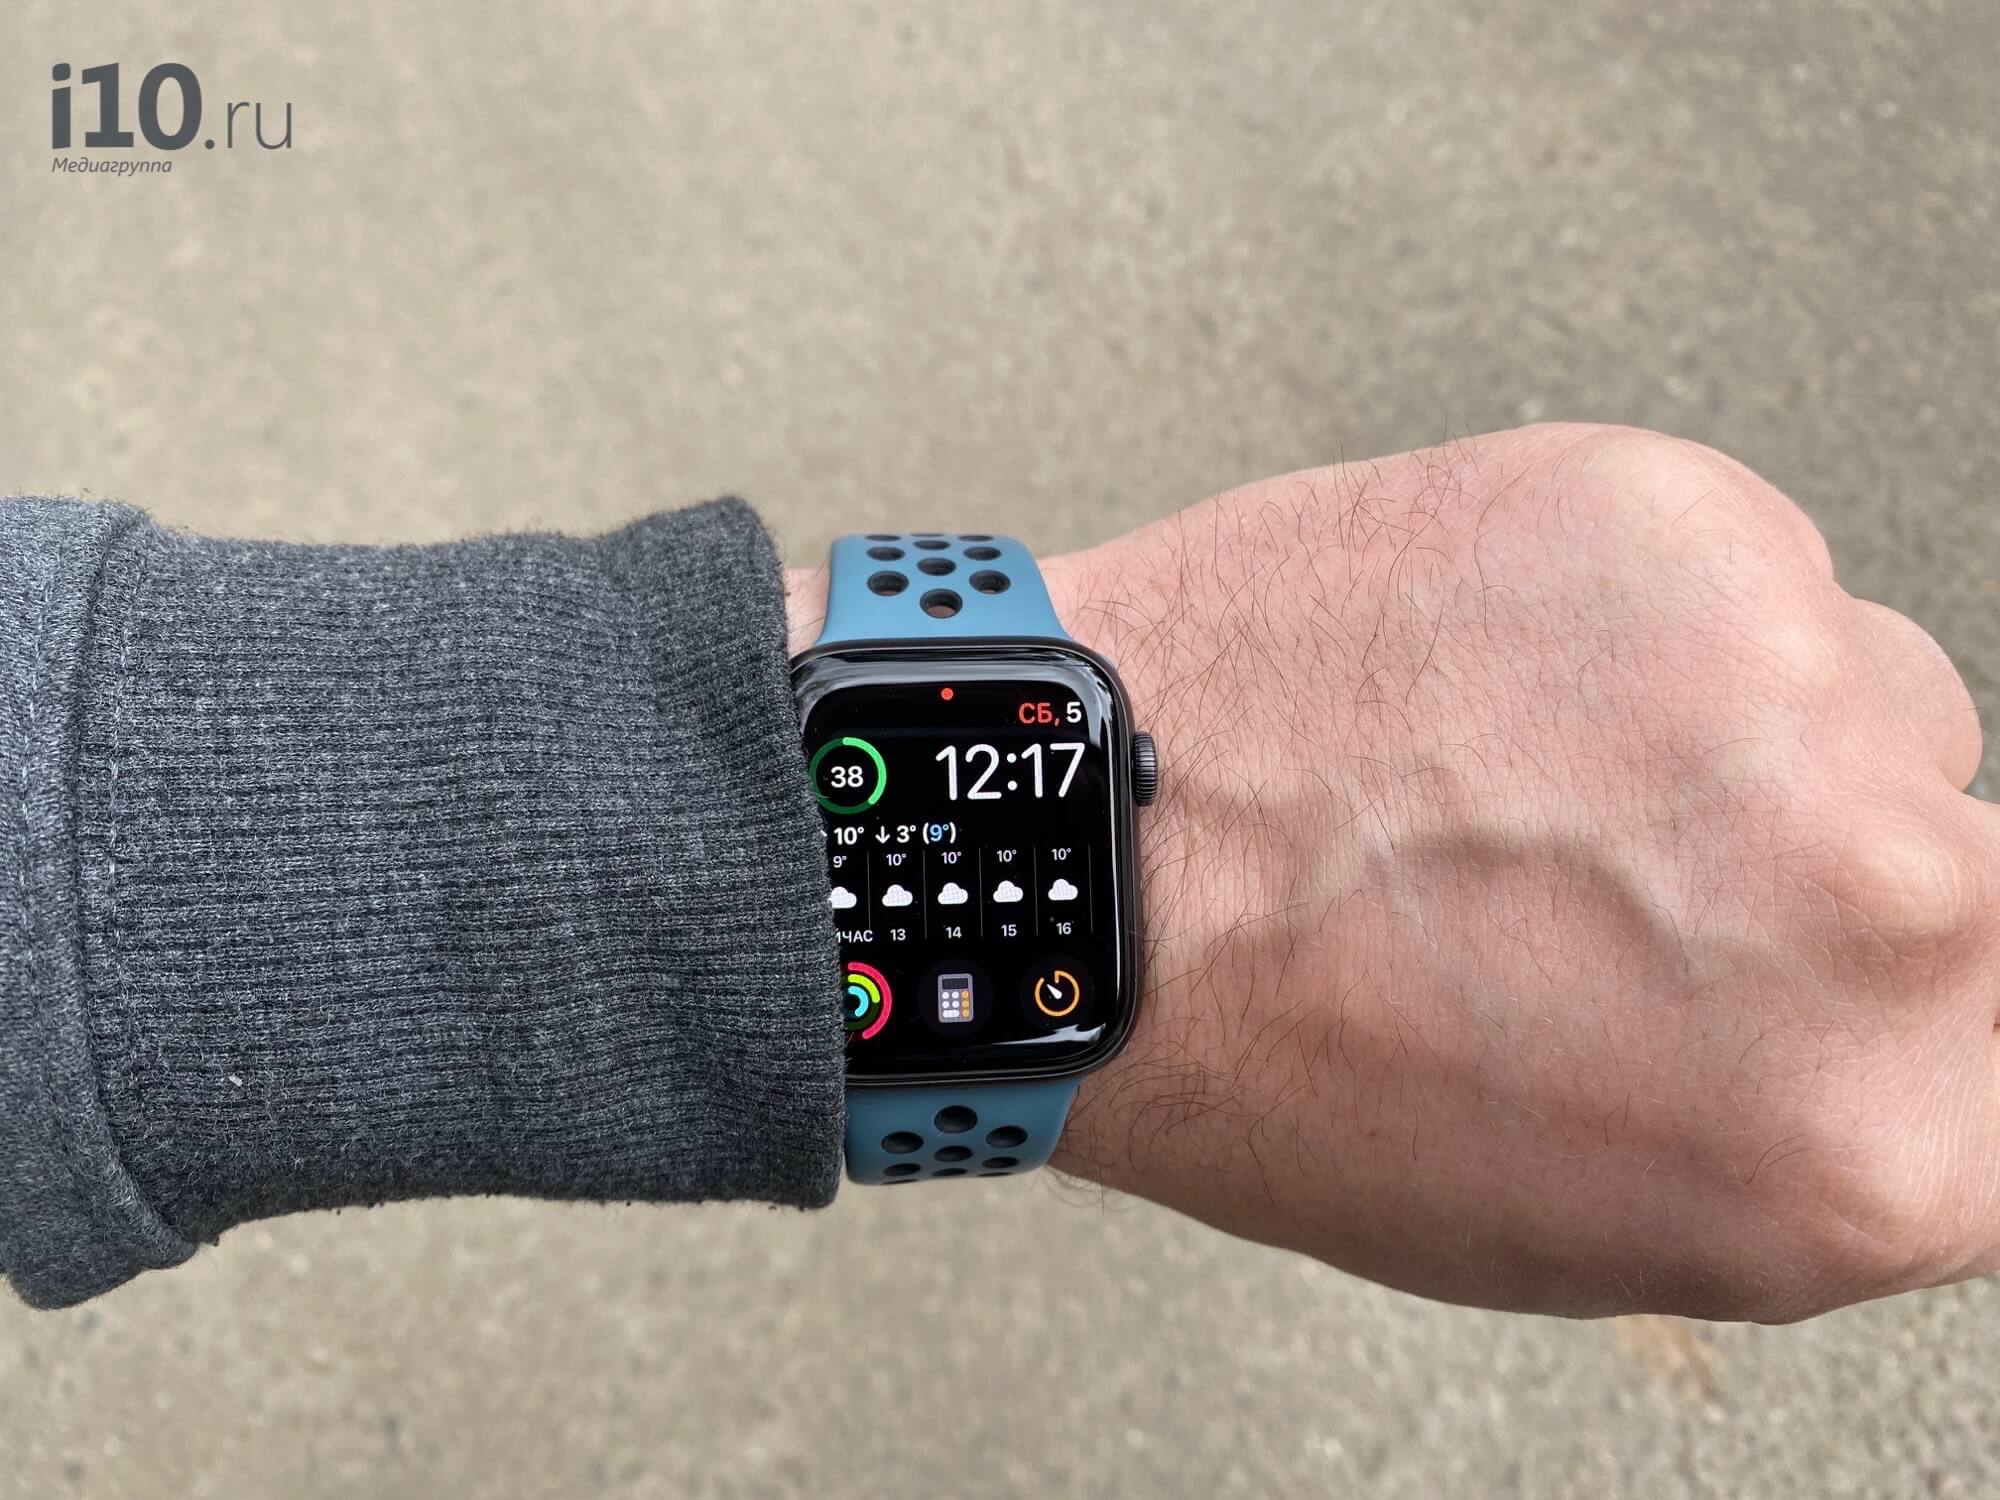 Первое впечатление от Apple Watch Series 5. С функцией «всегда на экране» не требуется ждать пока экран загорится после подъема руки. Фото.